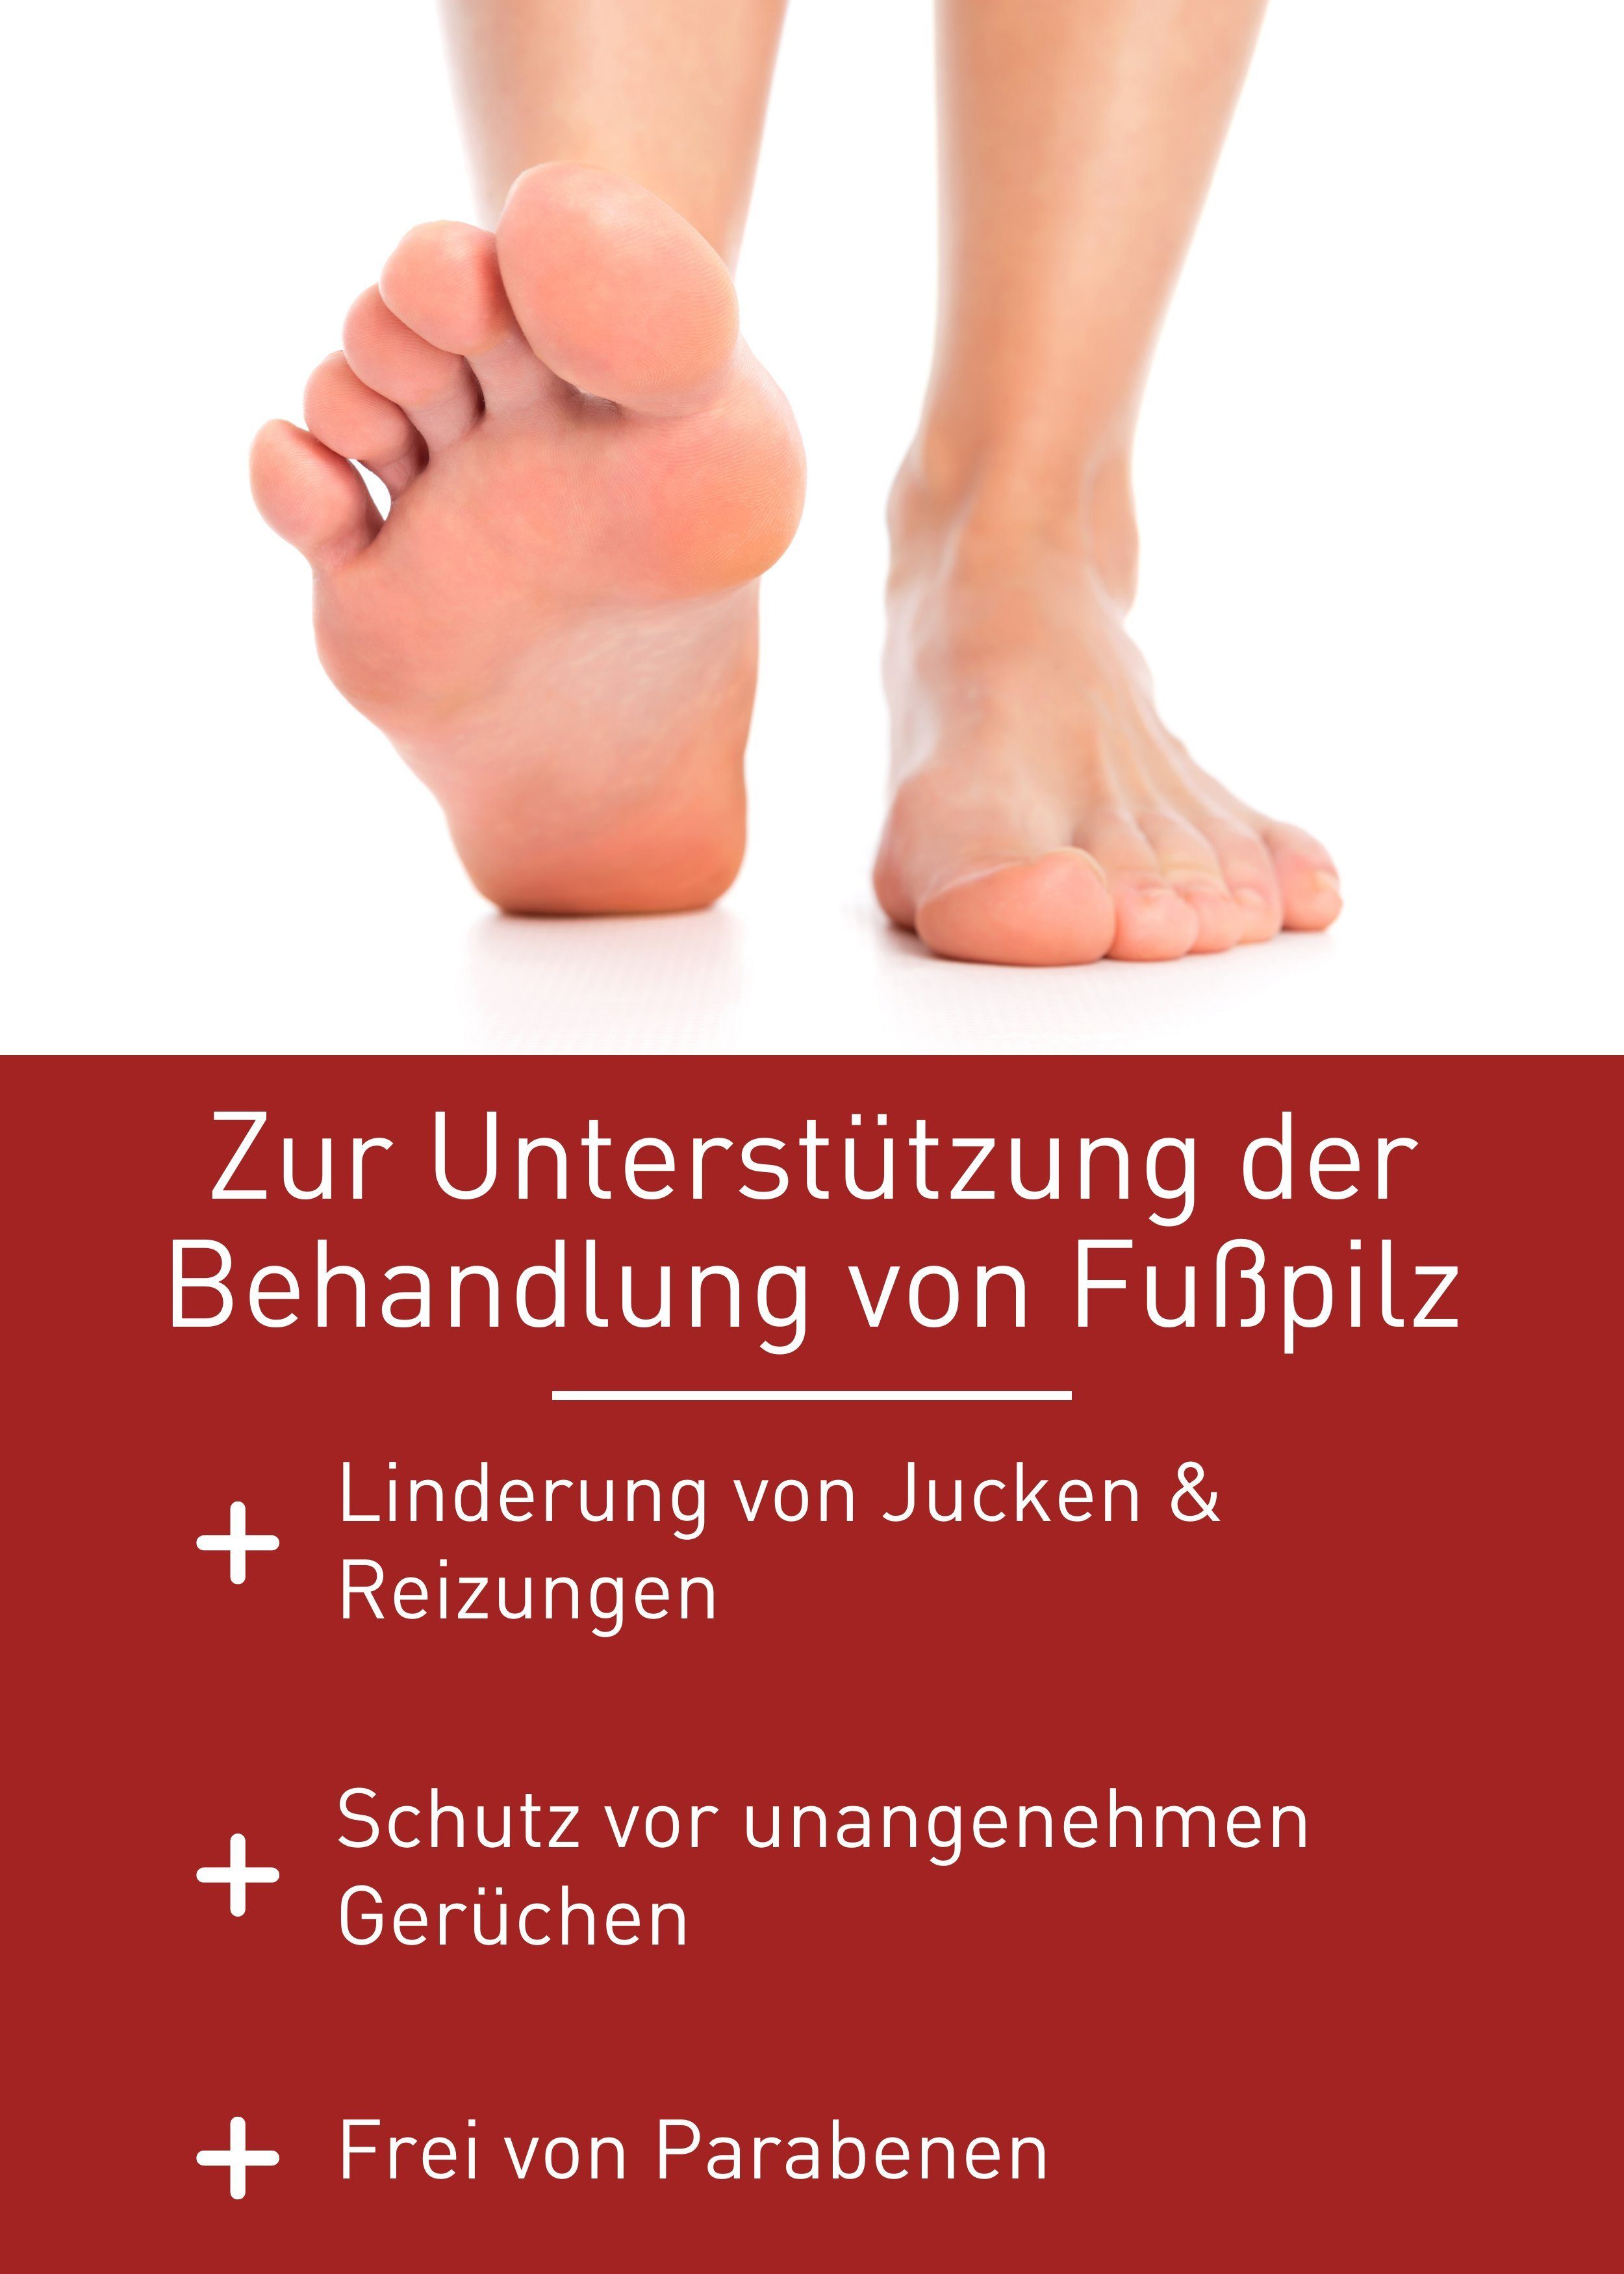 Fußpilz Behandlung Fußpflegespray Fußpilz N1 wirksamen Spray Zur Healthcare ml, 25 von